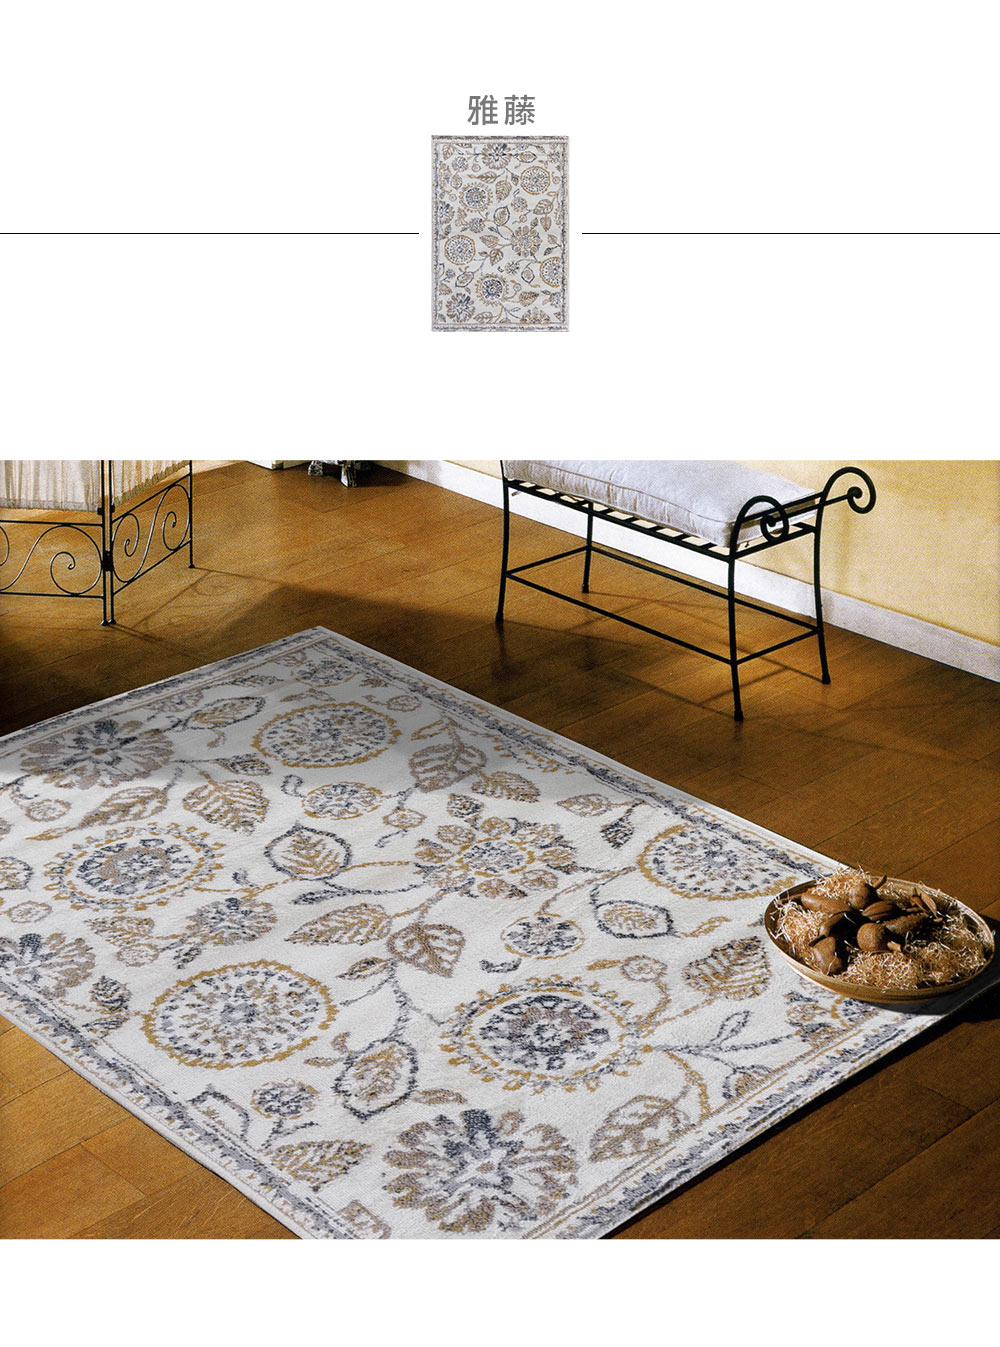 范登伯格 費雷拉簡約時尚地毯-雅藤(100x150cm)優惠